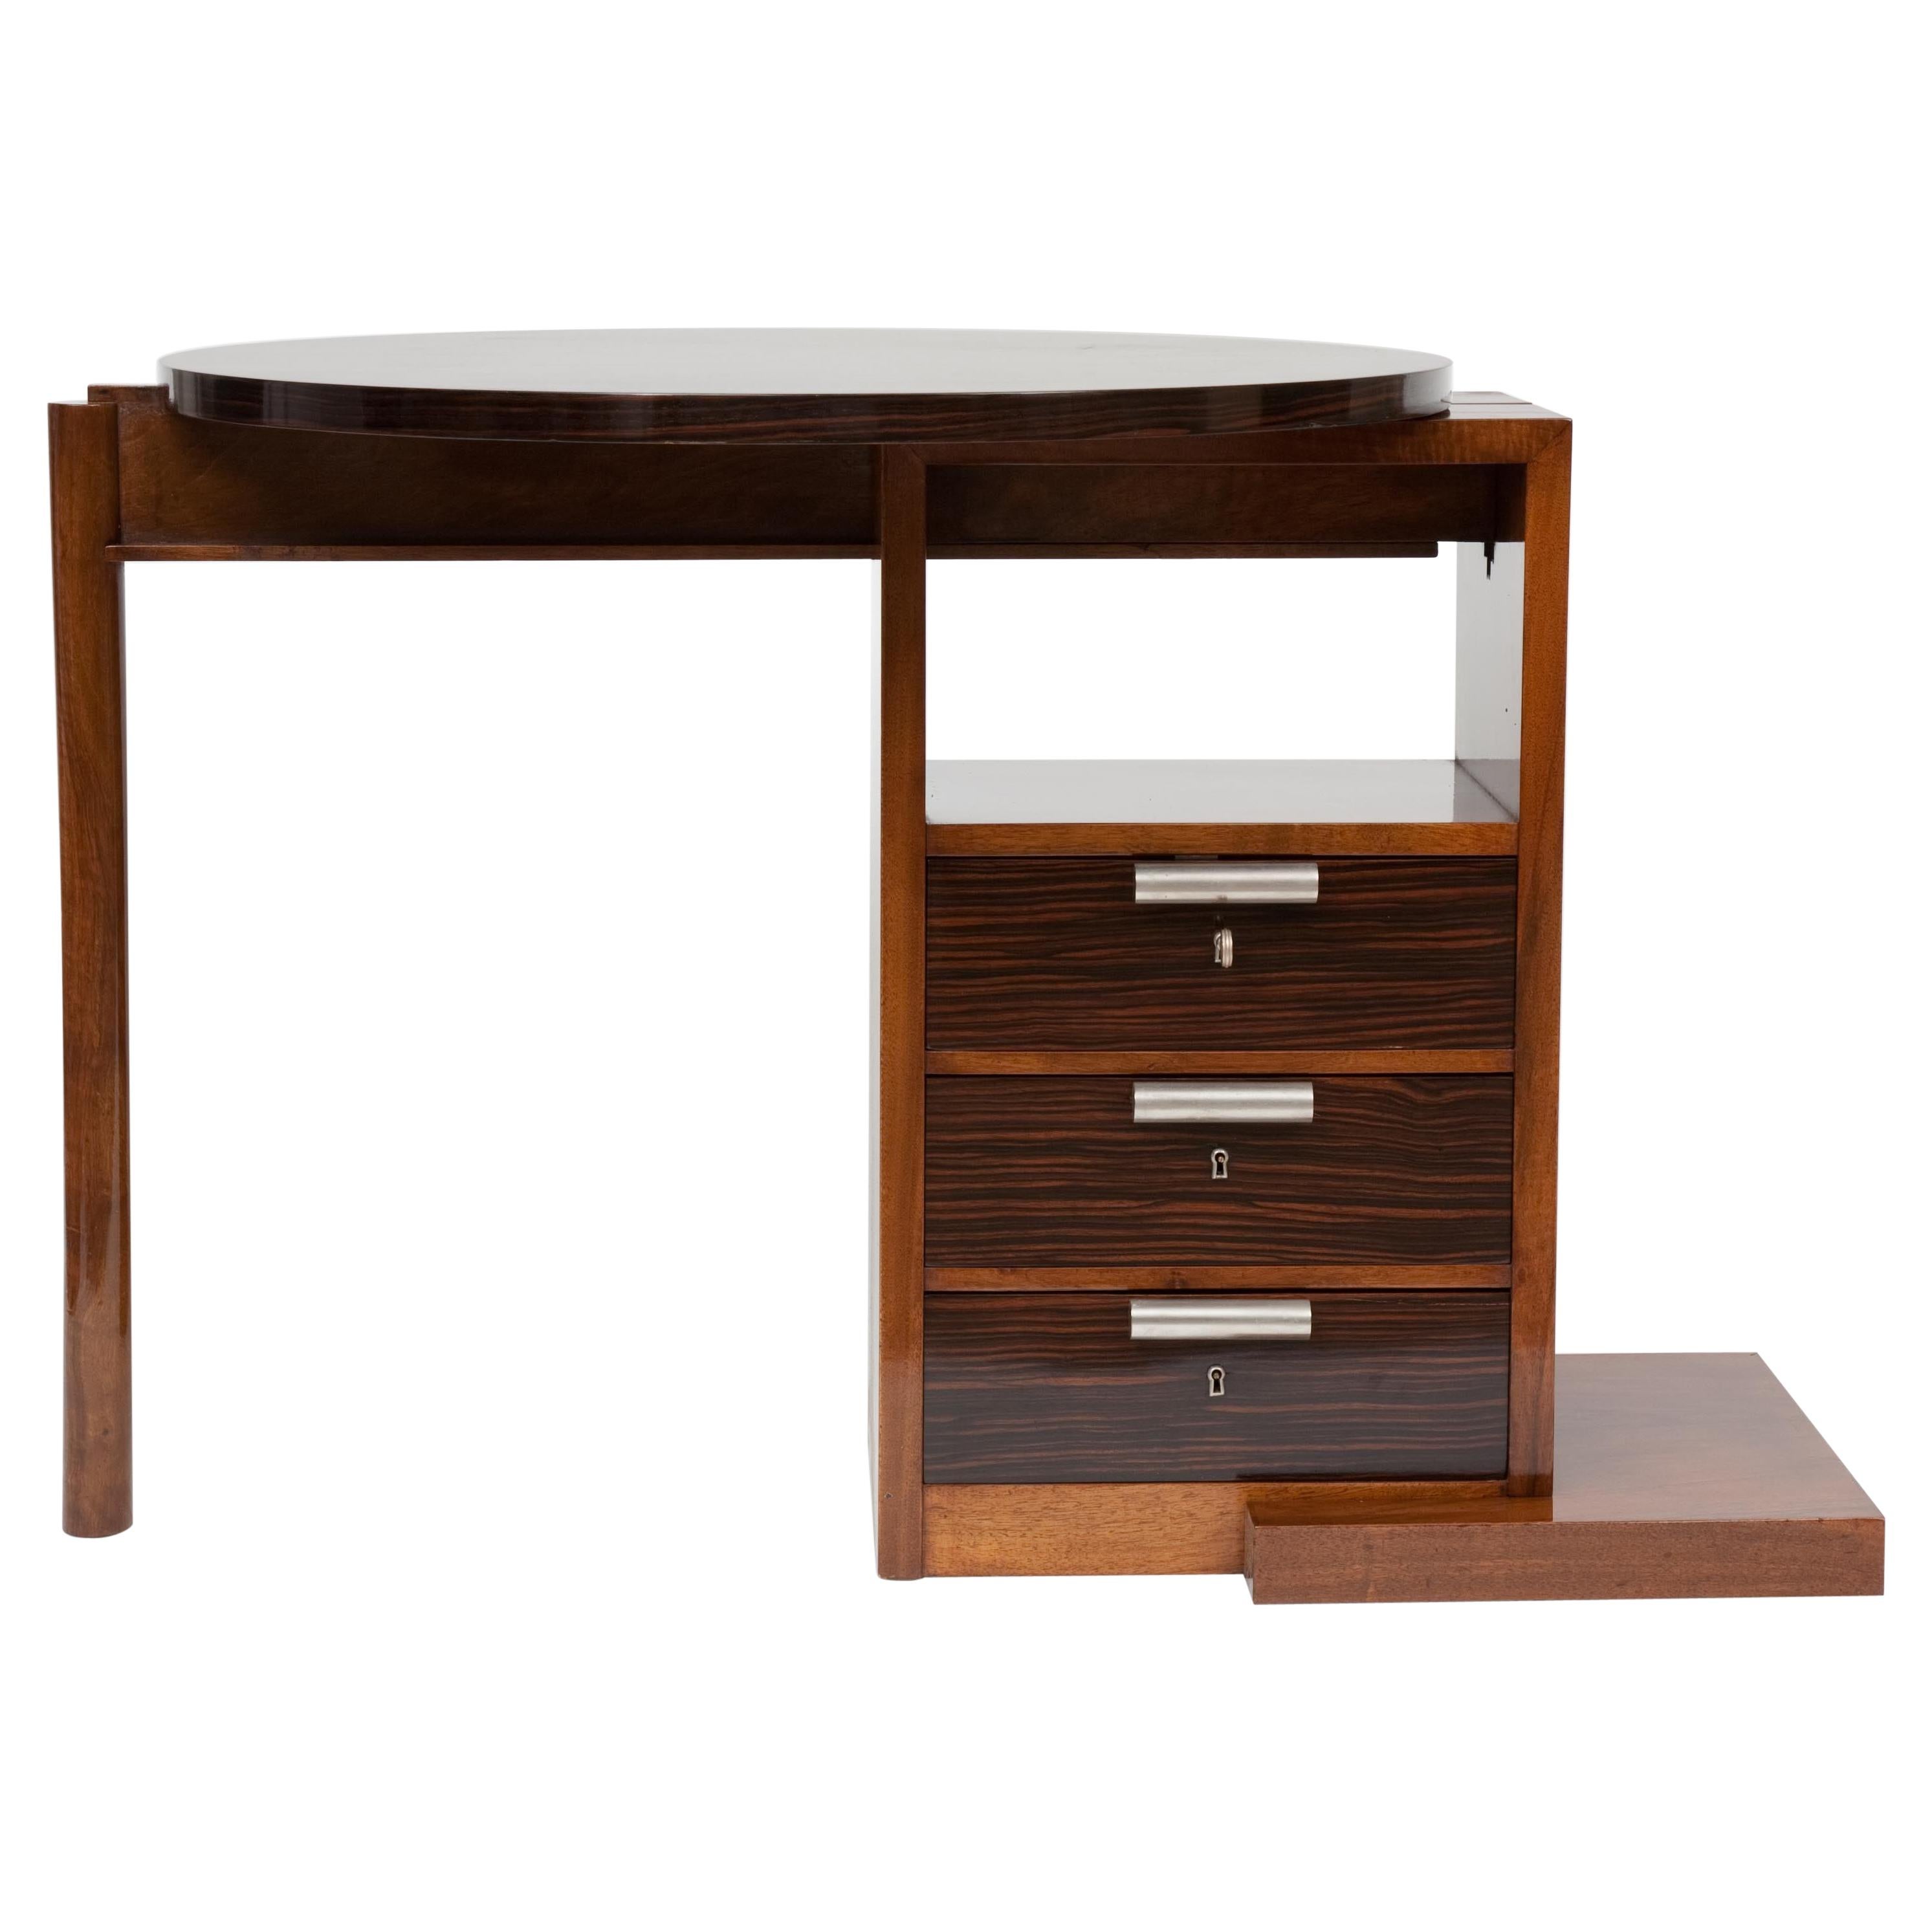 Adjustable Desk For Sale